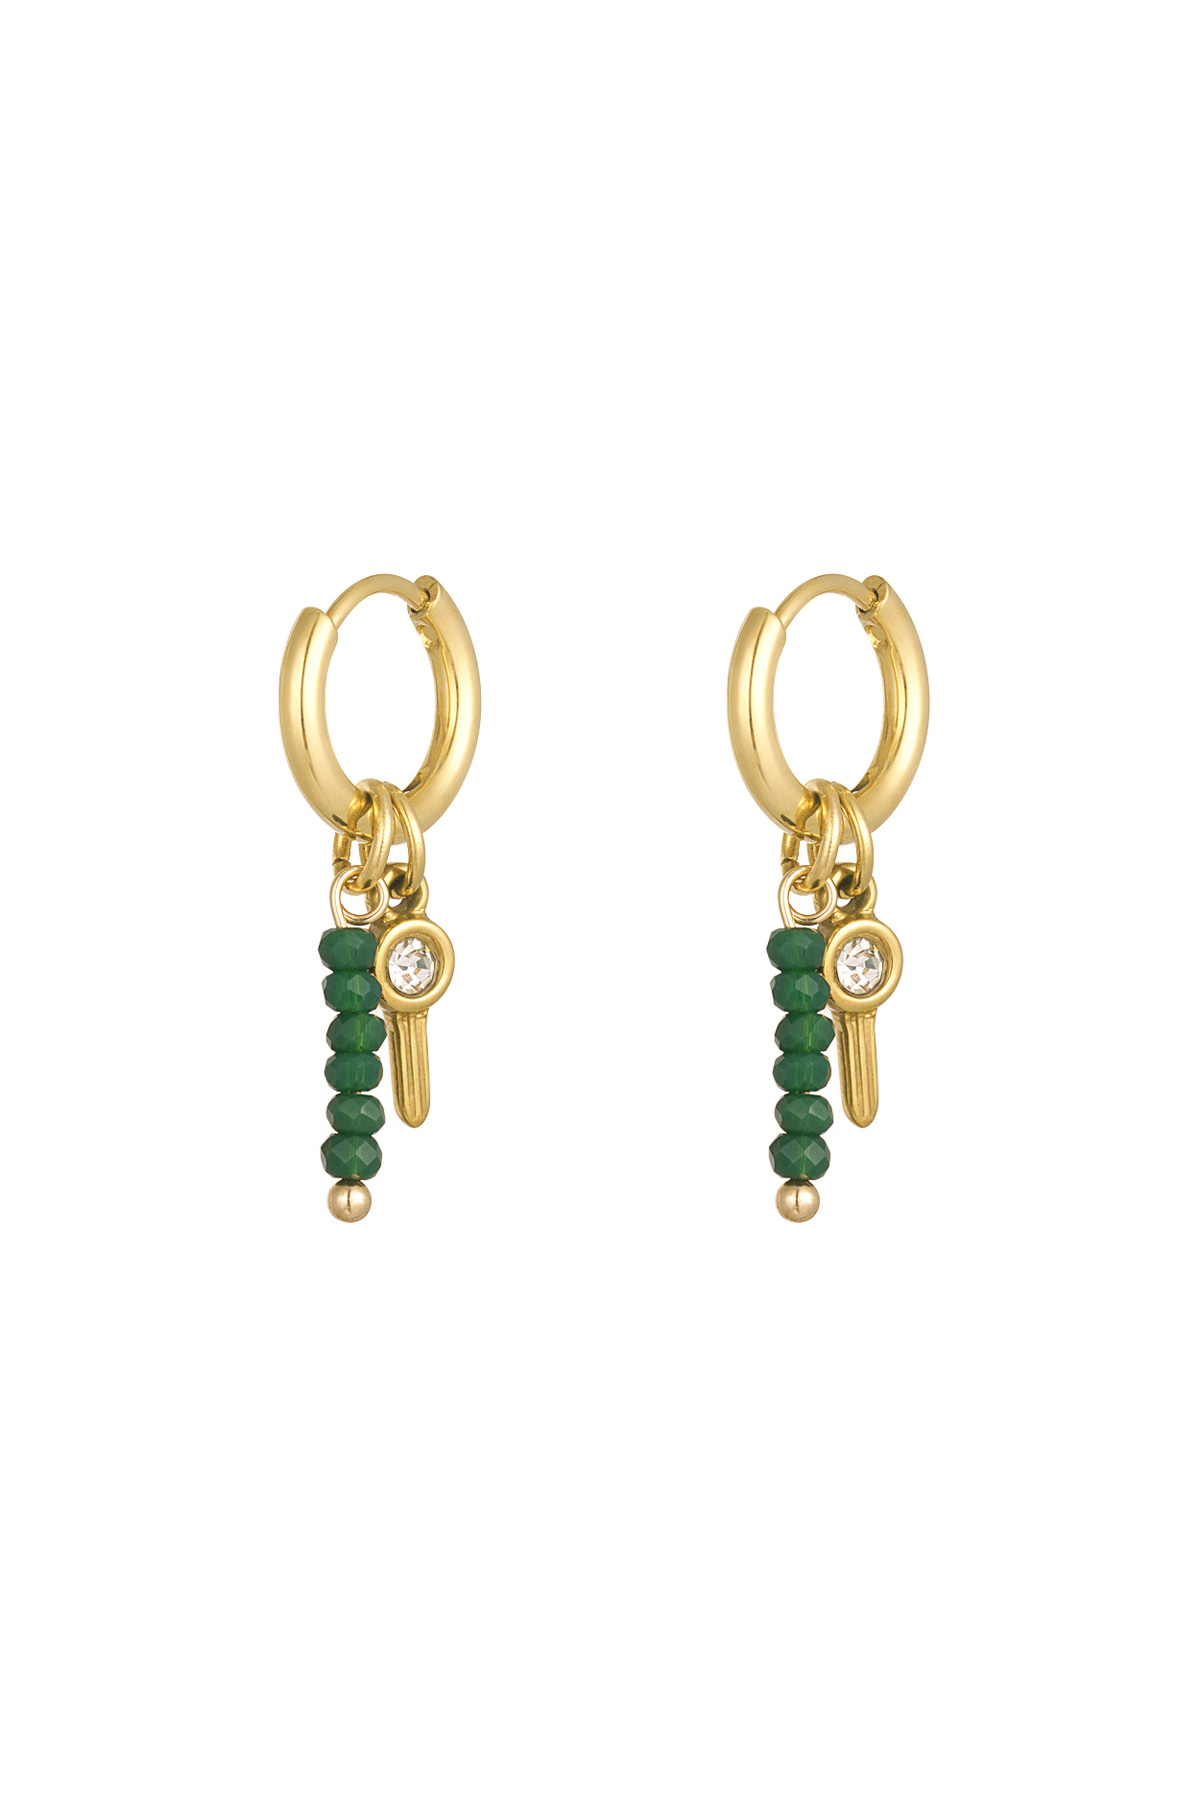 Ohrringe Perlen mit Anhänger – gold/grün